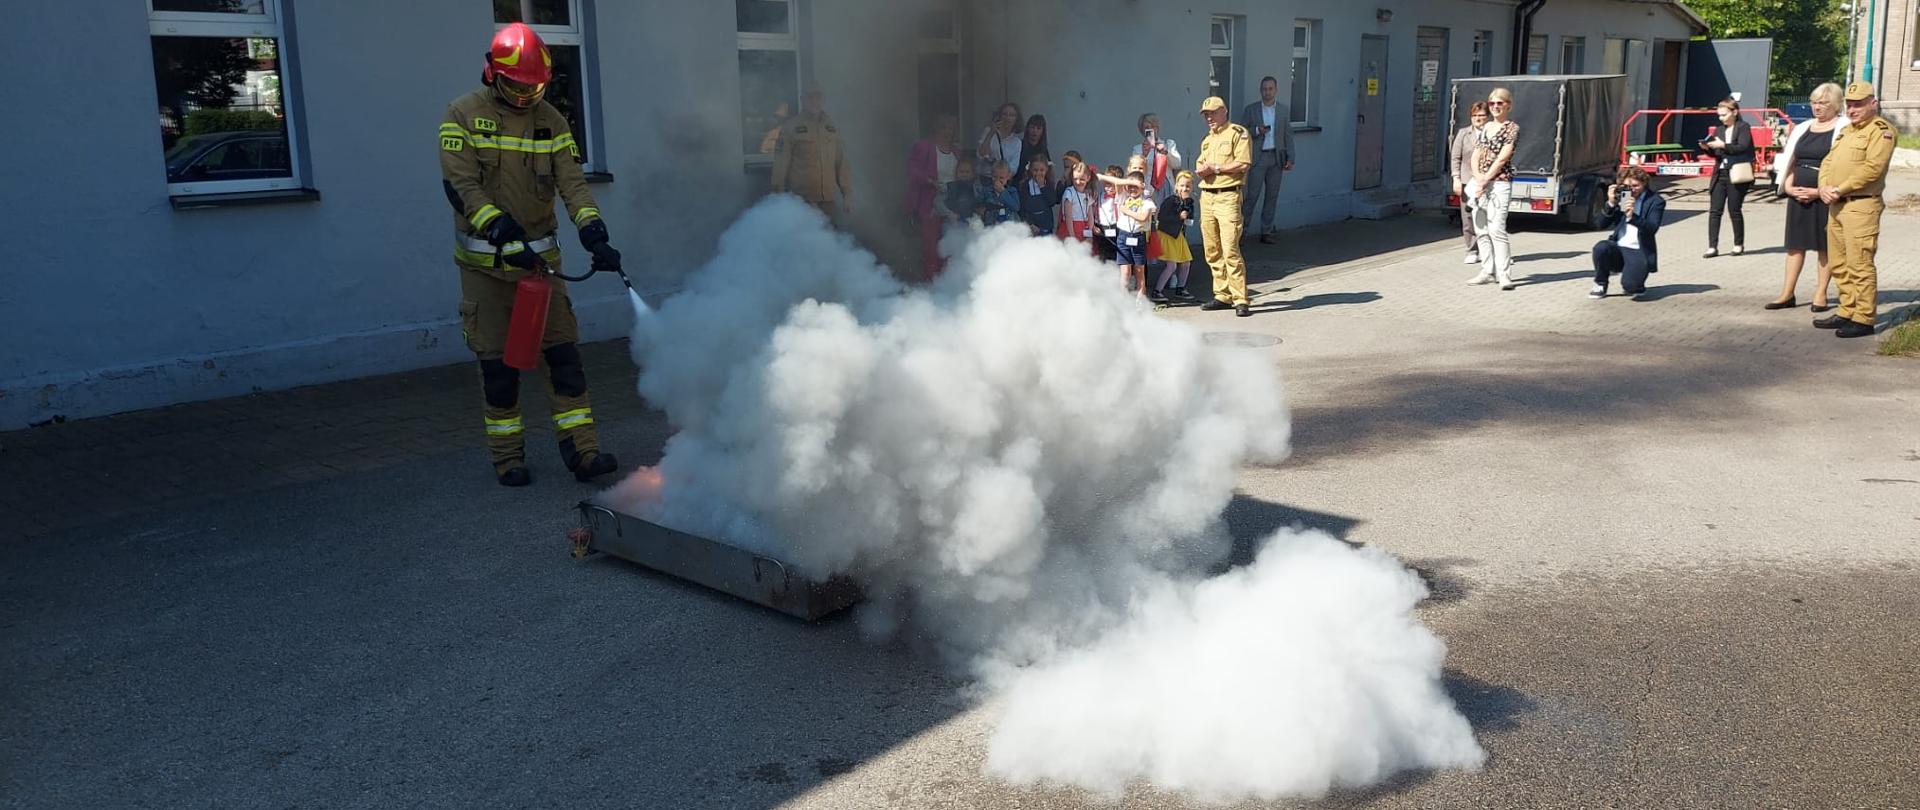 Strażak przy użyciu gaśnicy proszkowej gasi pożar paliwa w tacy. Z tacy unoszą się kłęby szarego dymu. Na drugim planie dzieci wraz z opiekunami oraz towarzyszący im strażacy.